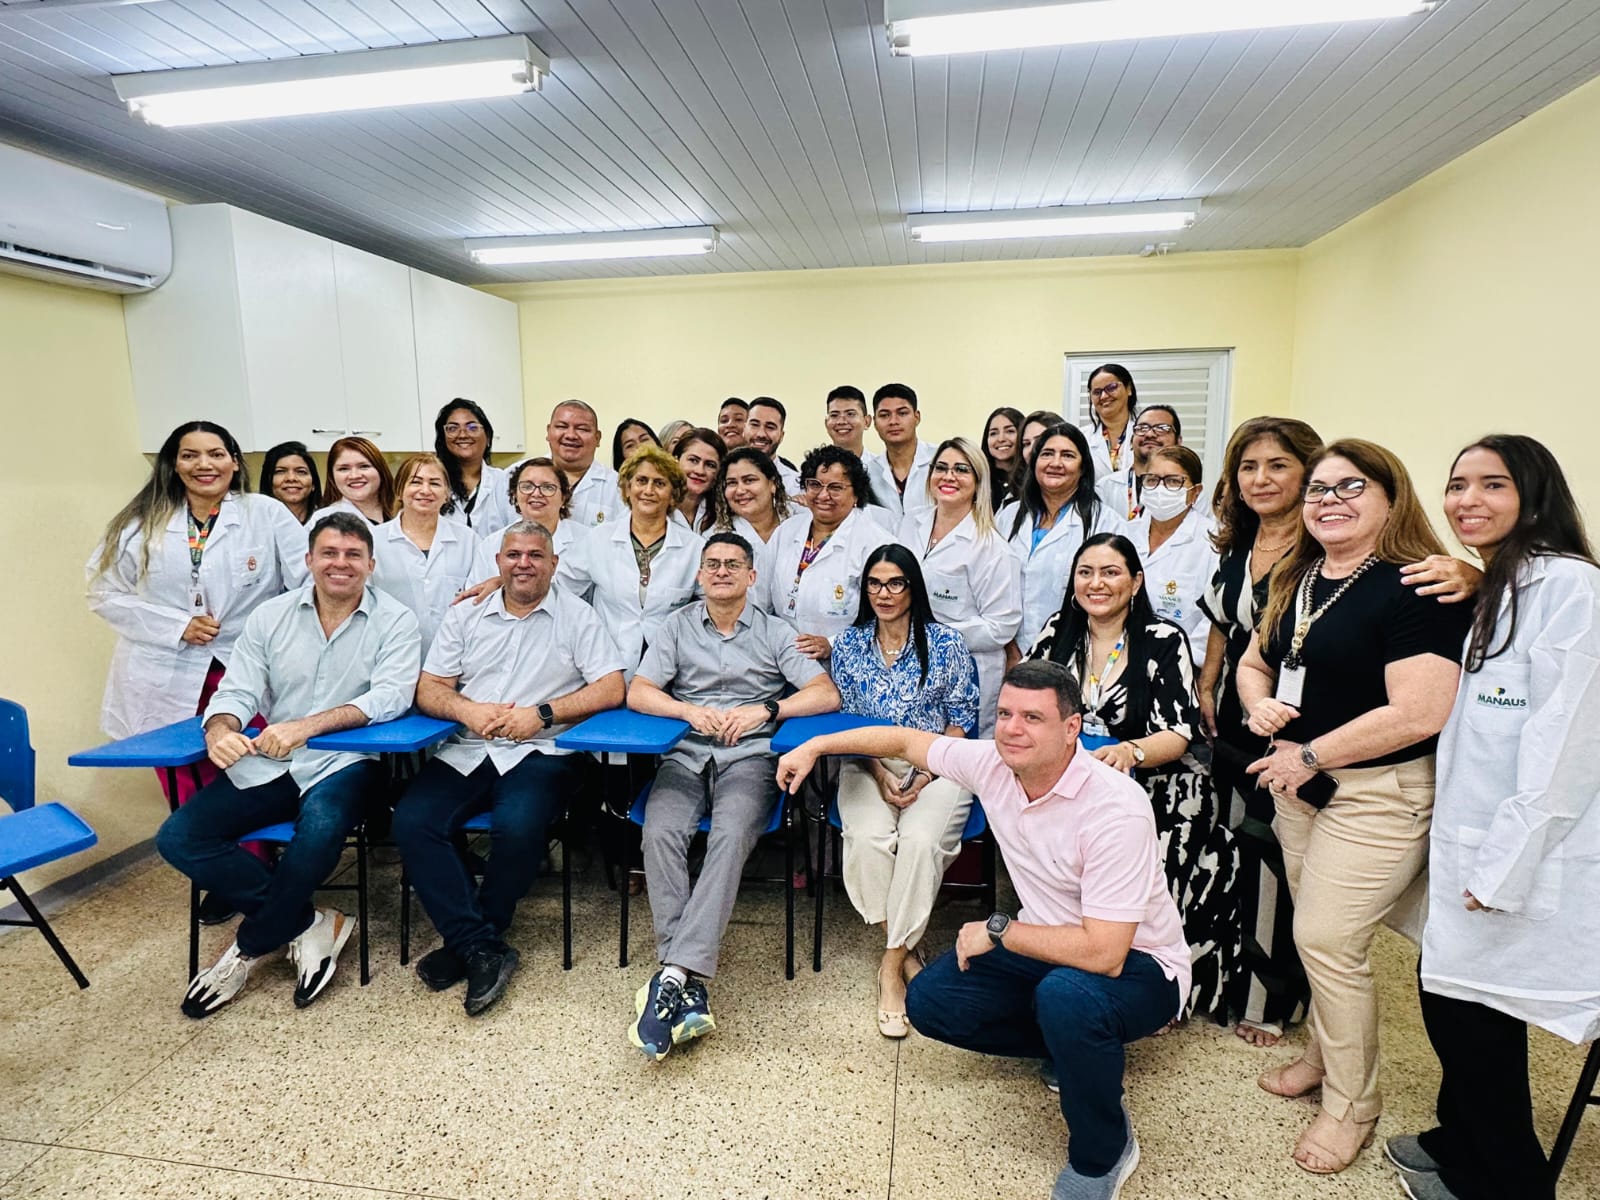 Vereador Elan Alencar participa de inauguração de unidade de saúde no Viver Melhor